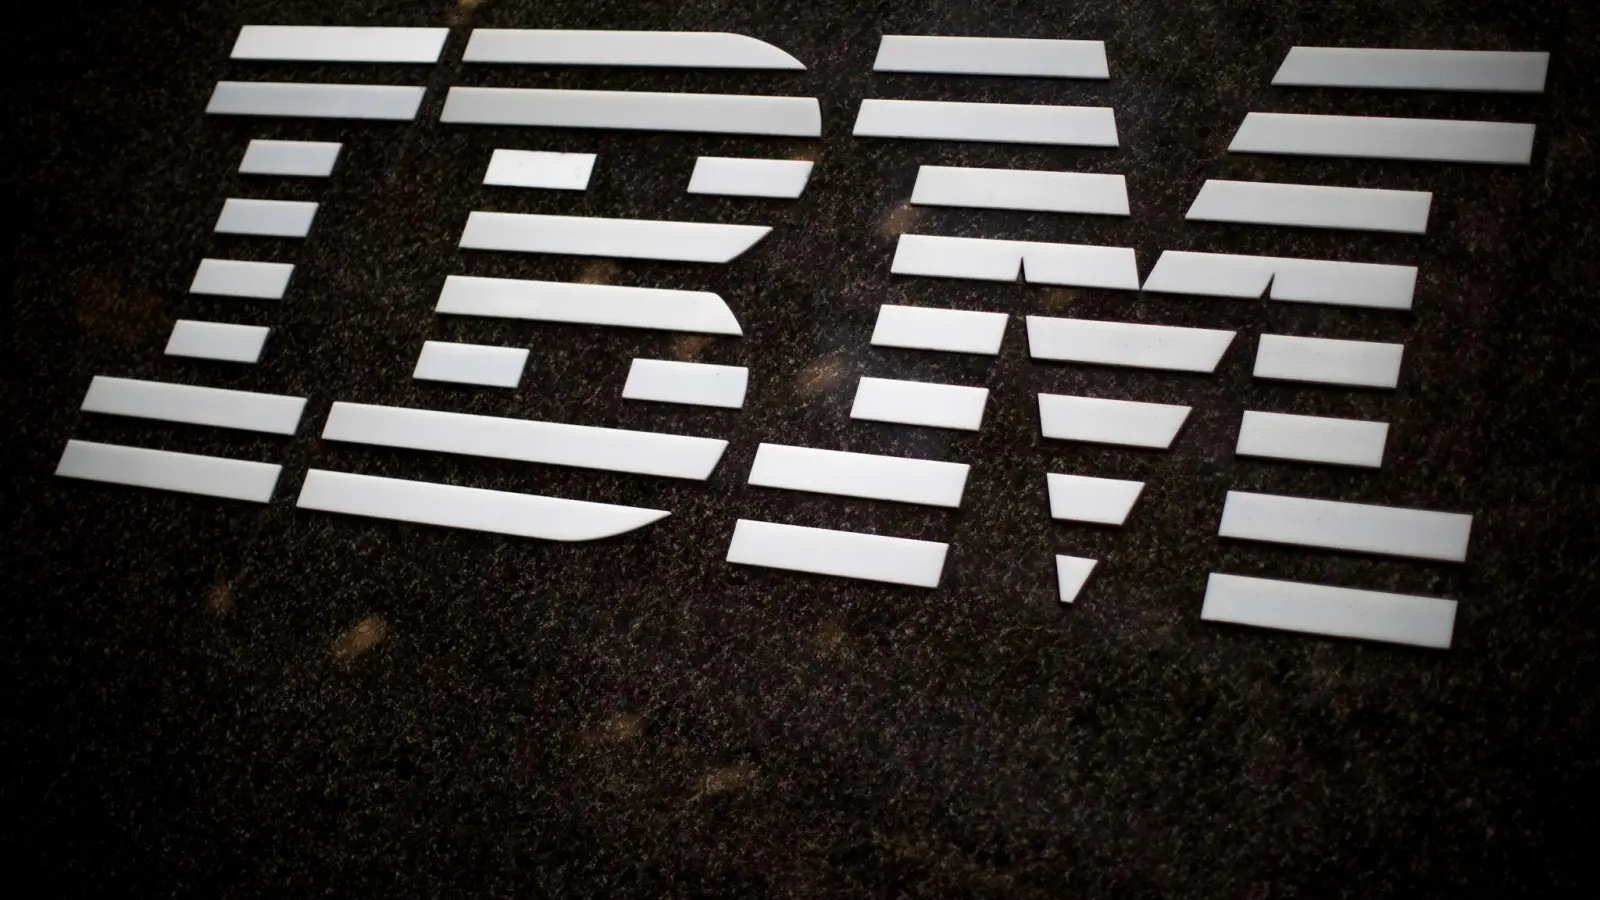 Der Computerriese IBM verzichtet zukünftig auf Werbung via X. (Foto: Mary Altaffer/AP/dpa)